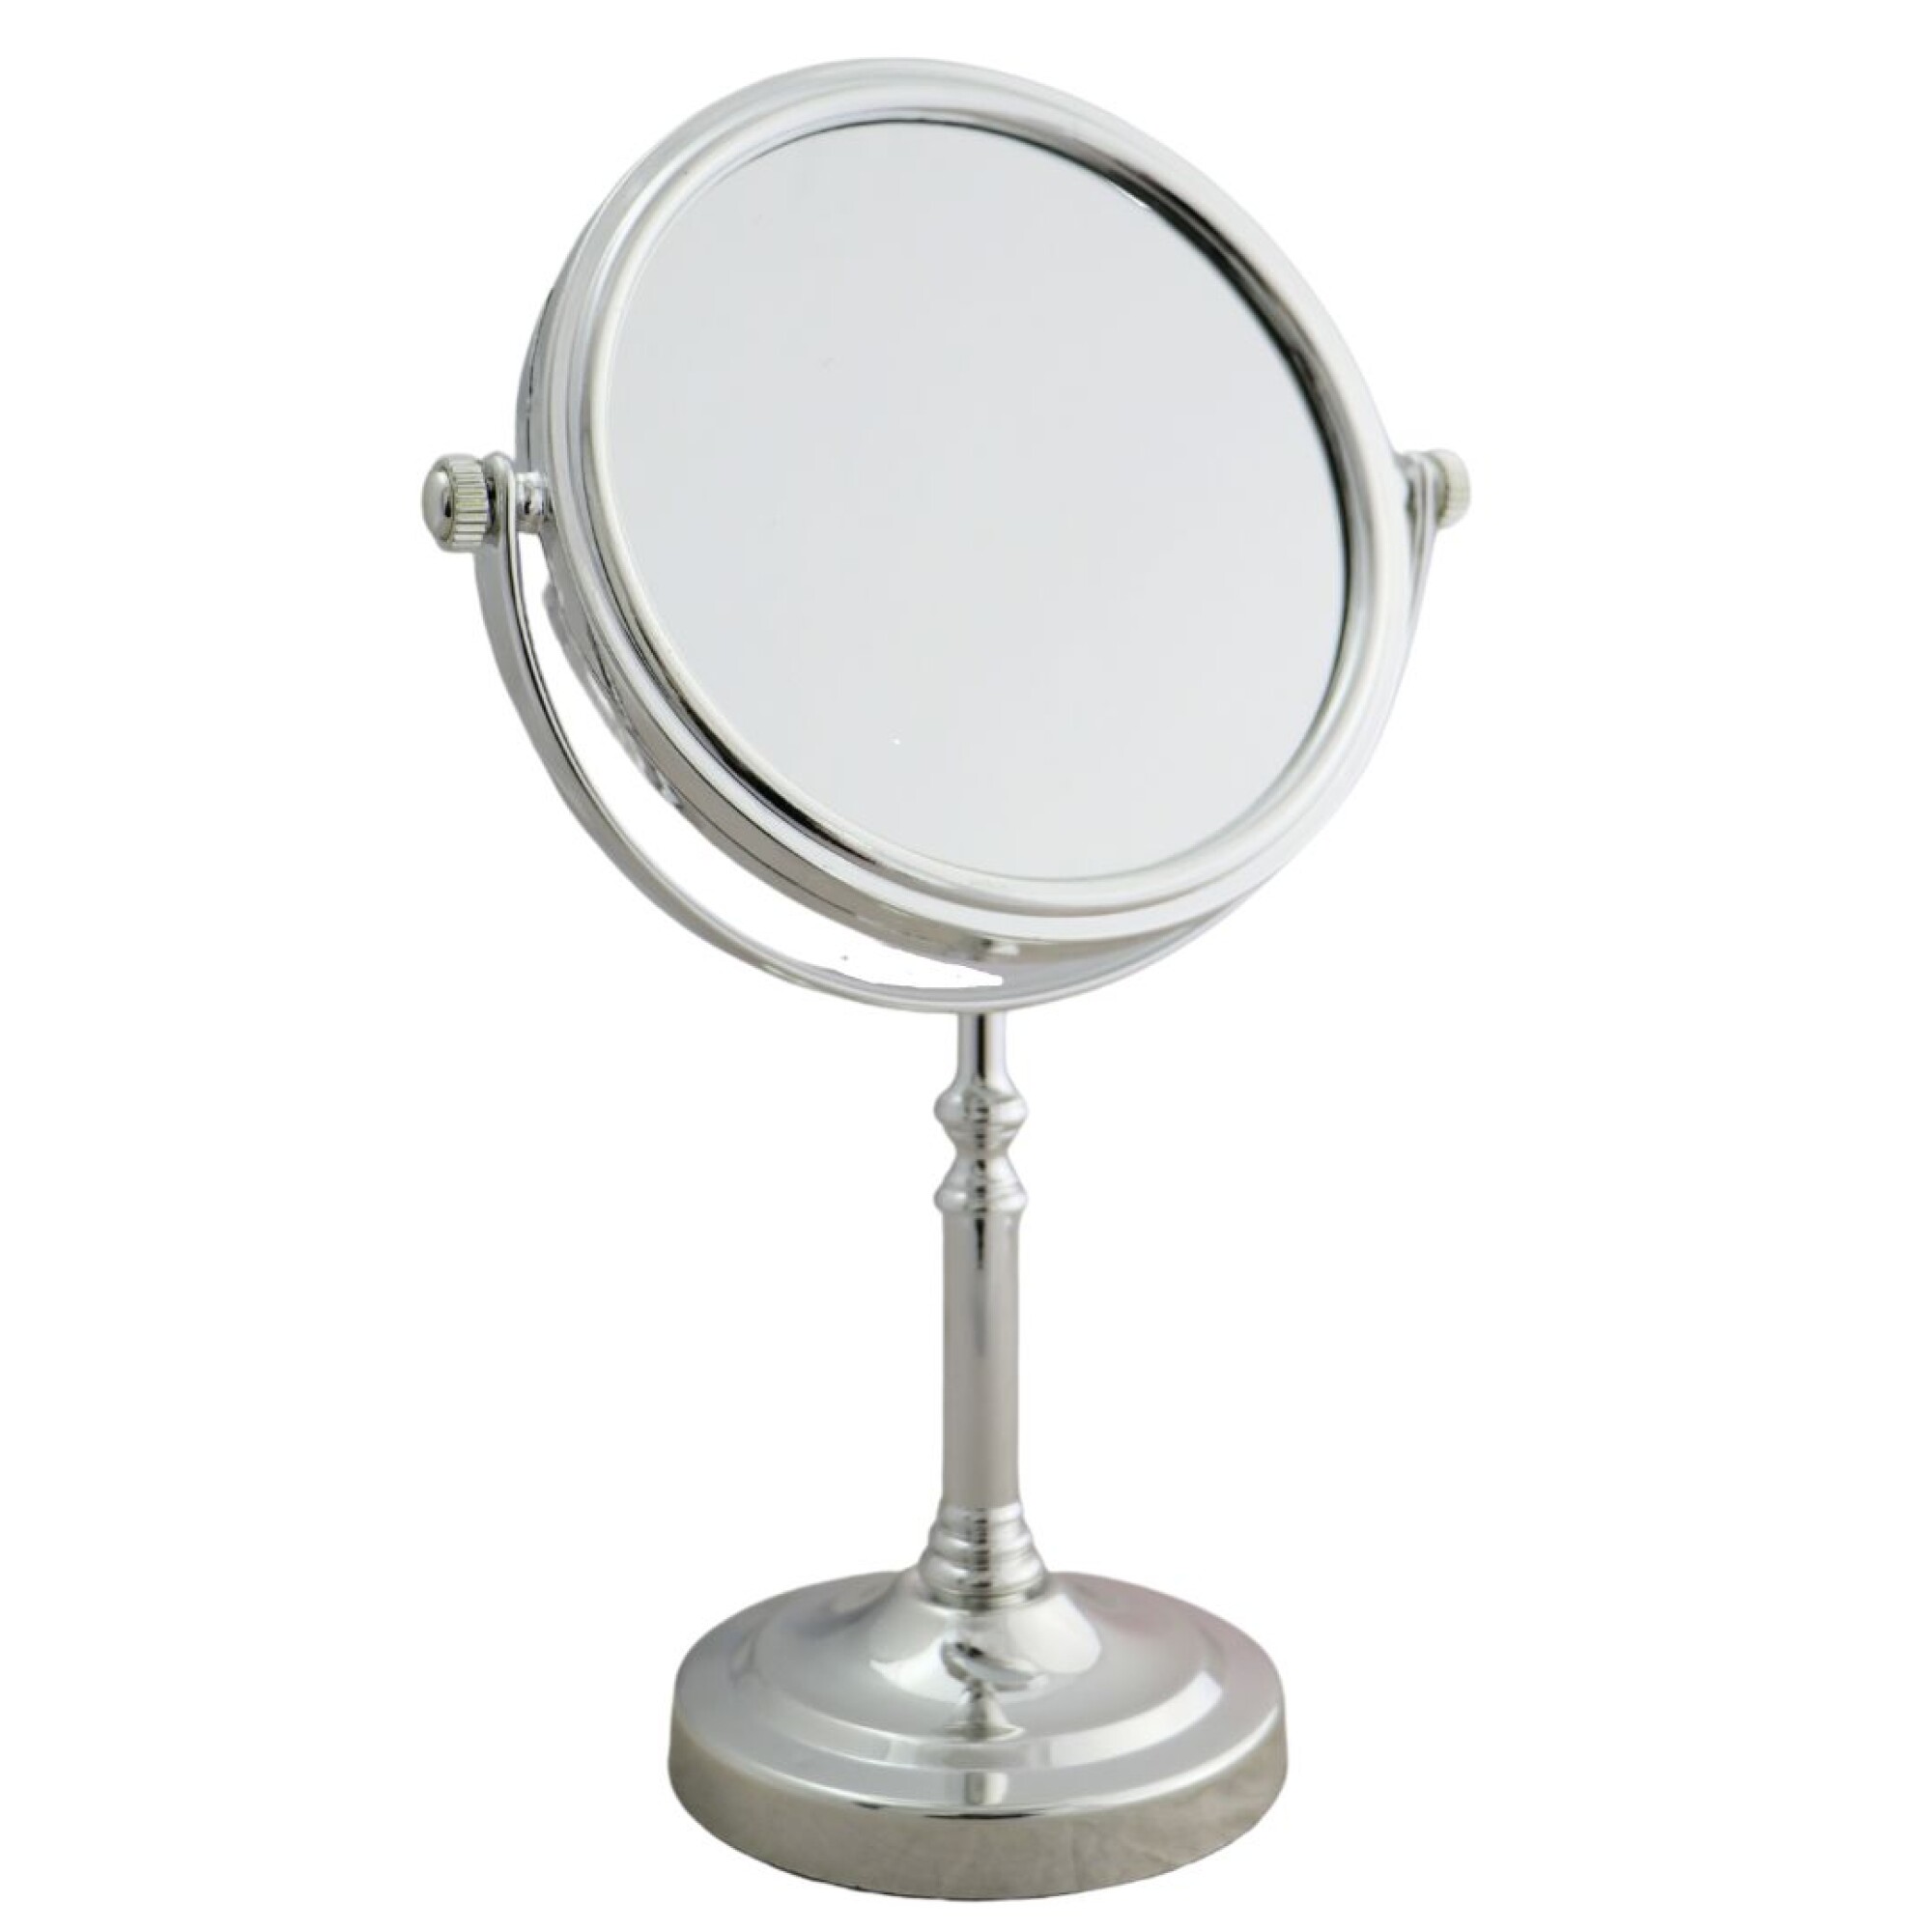 Espejo doble de mesa (aumento x10)